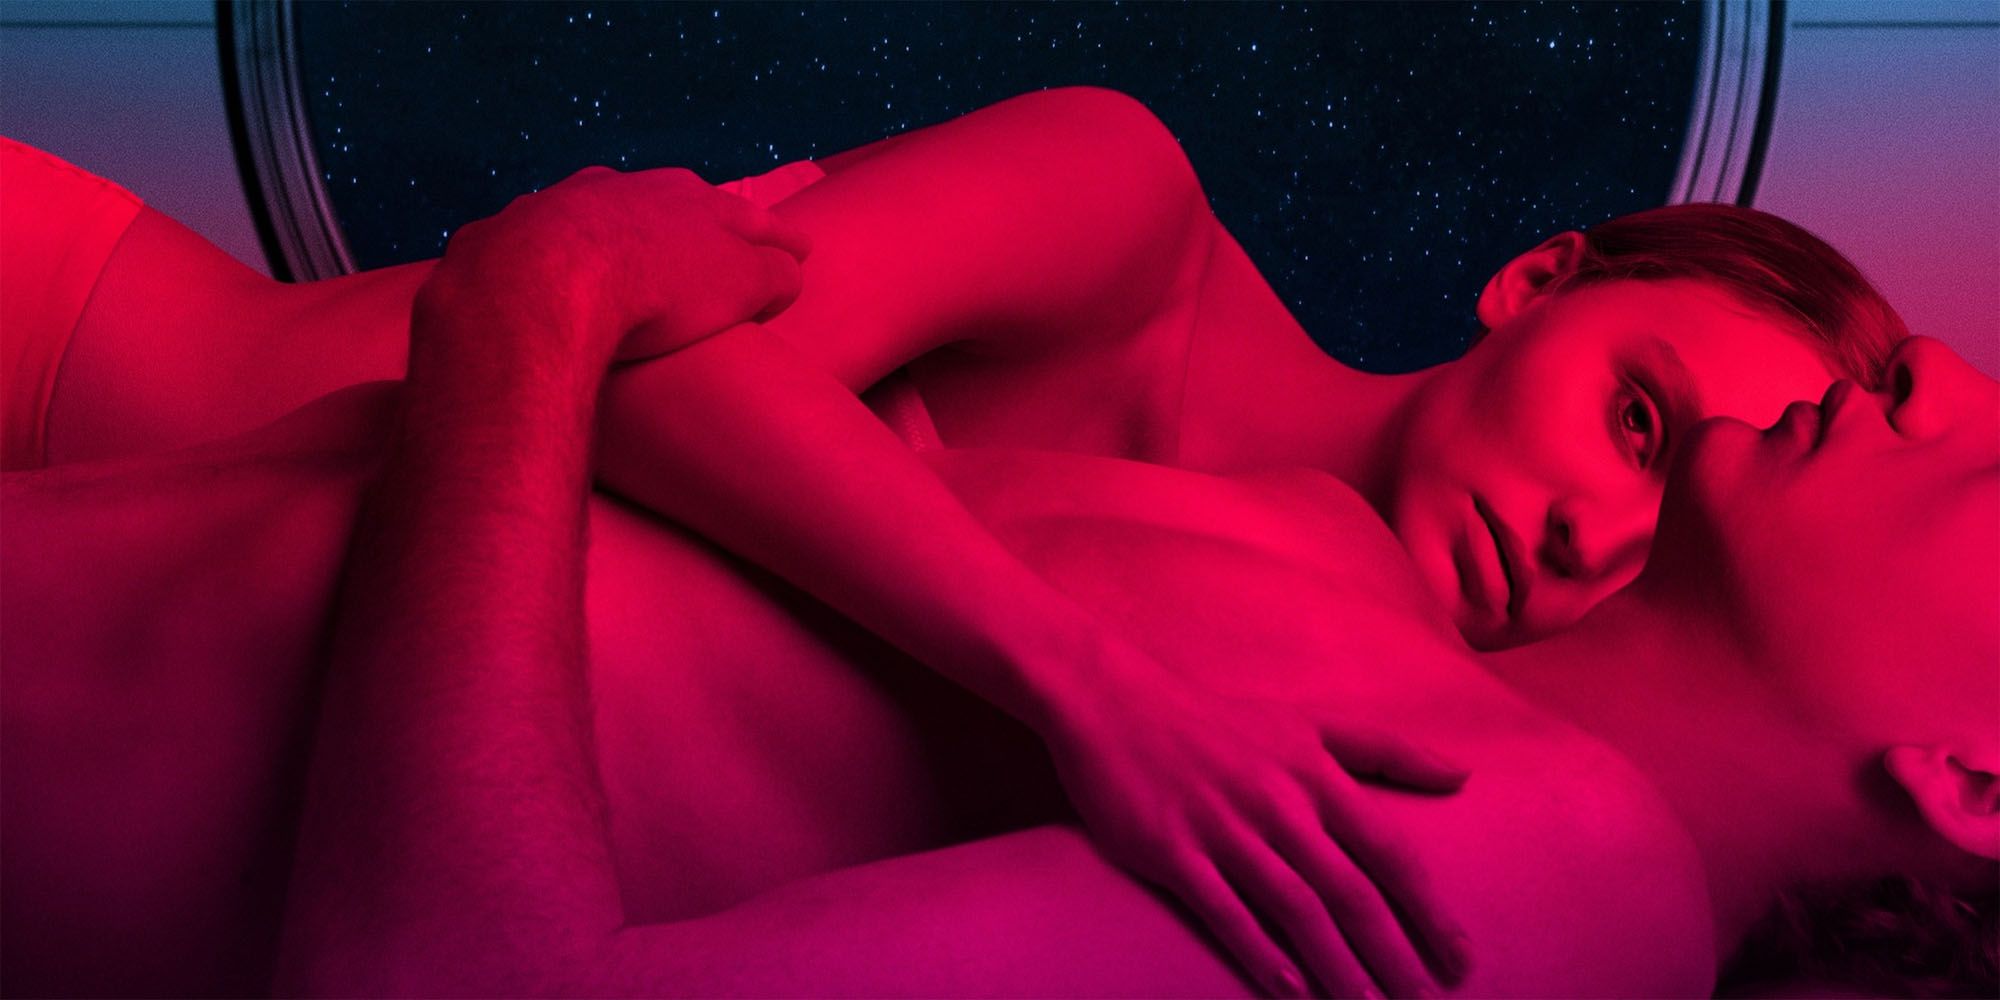 Um homem e uma mulher estavam deitados juntos sob a luz de neon do pôster das Voyagers.